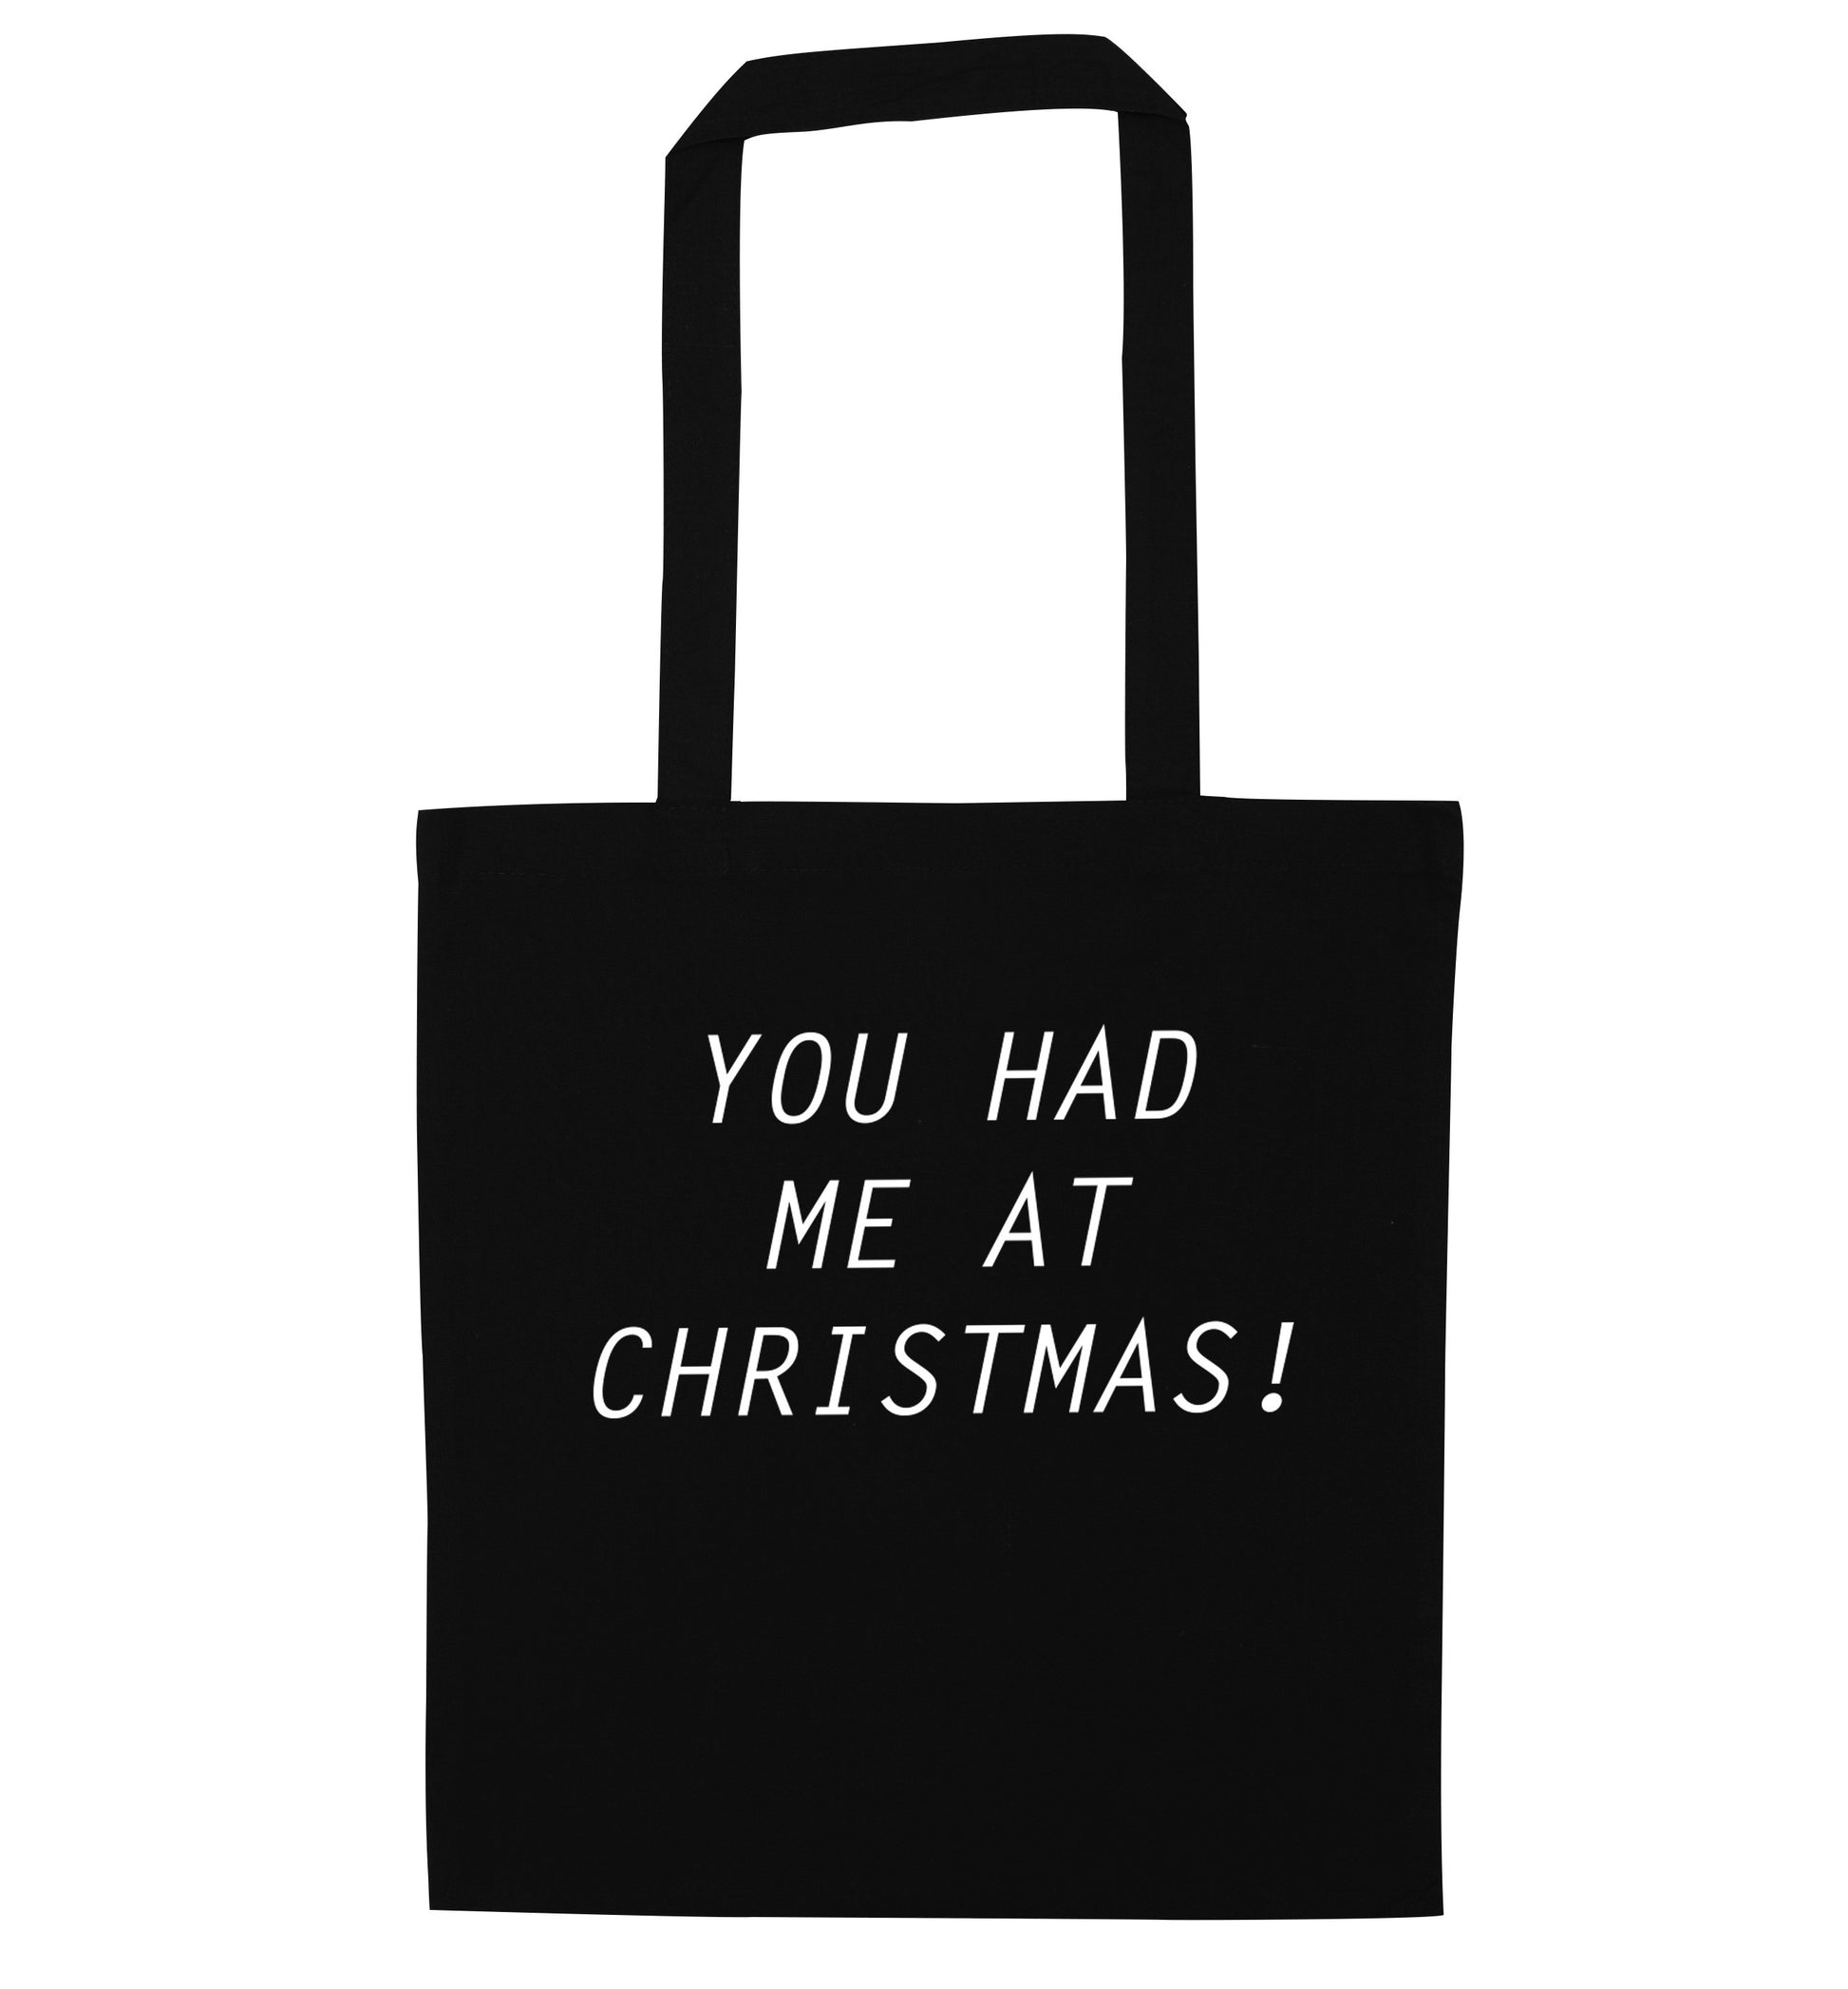 You had me at Christmas black tote bag